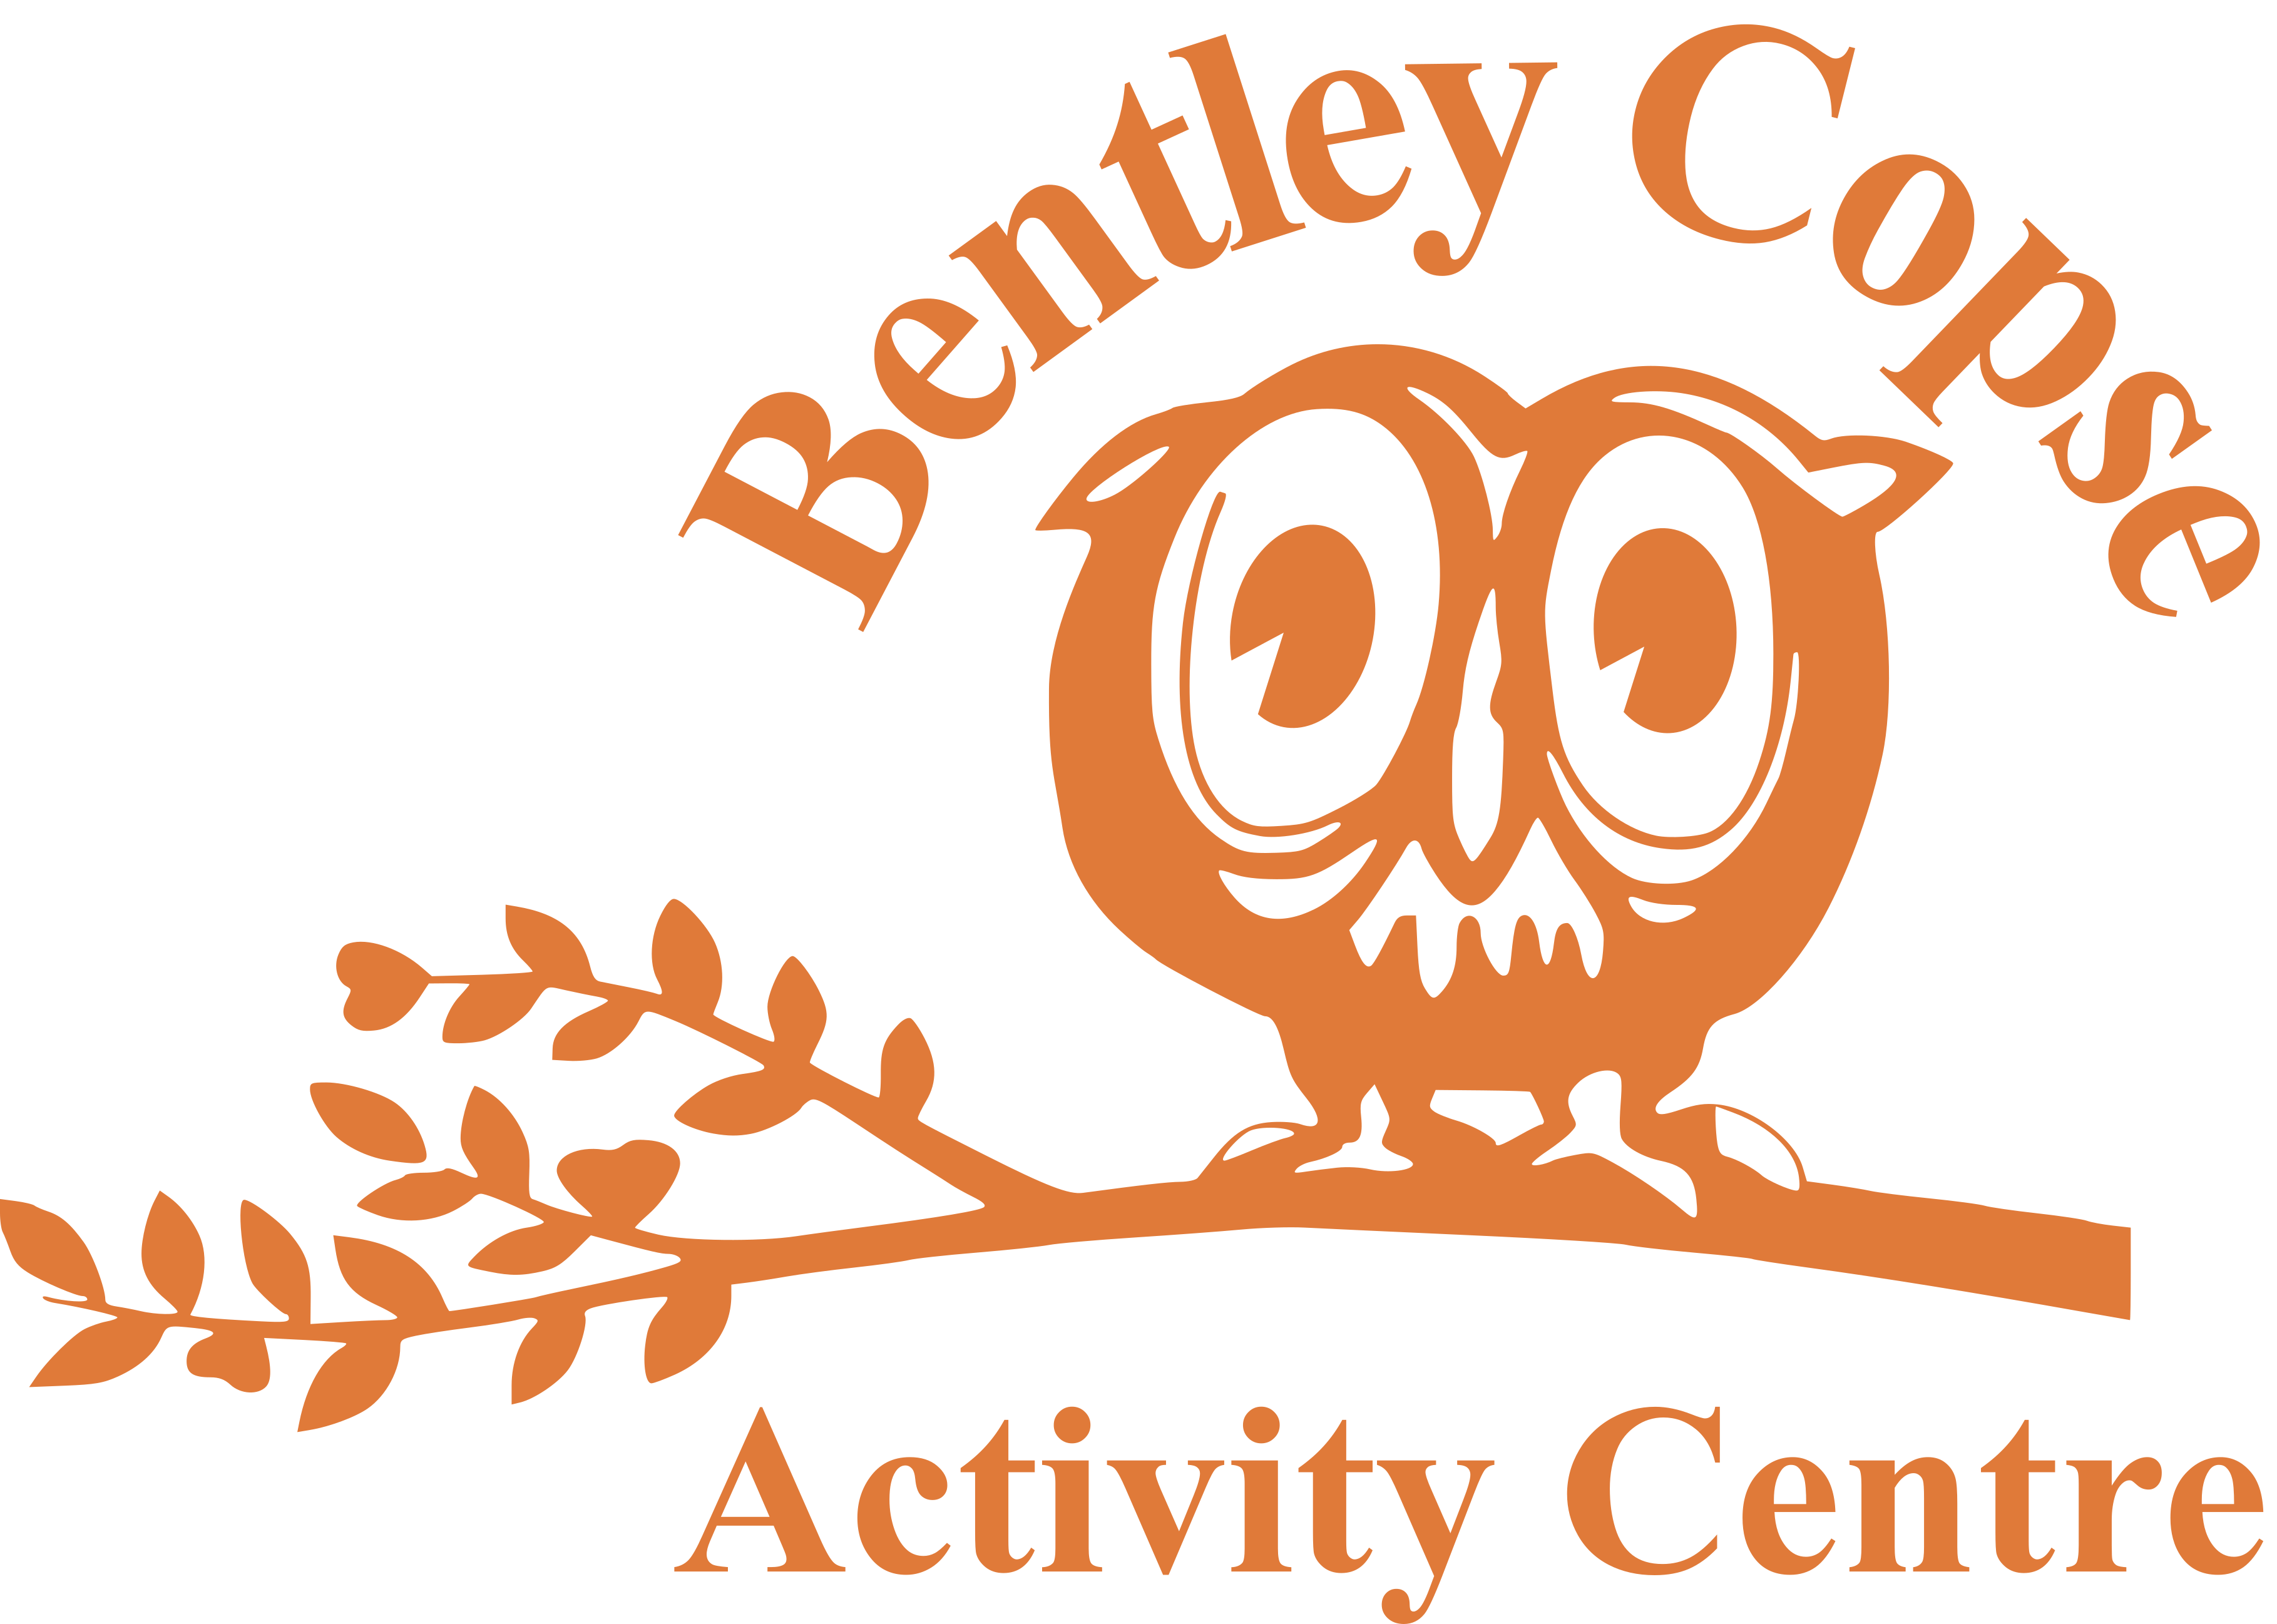 Bentley Copse Activity Centre logo